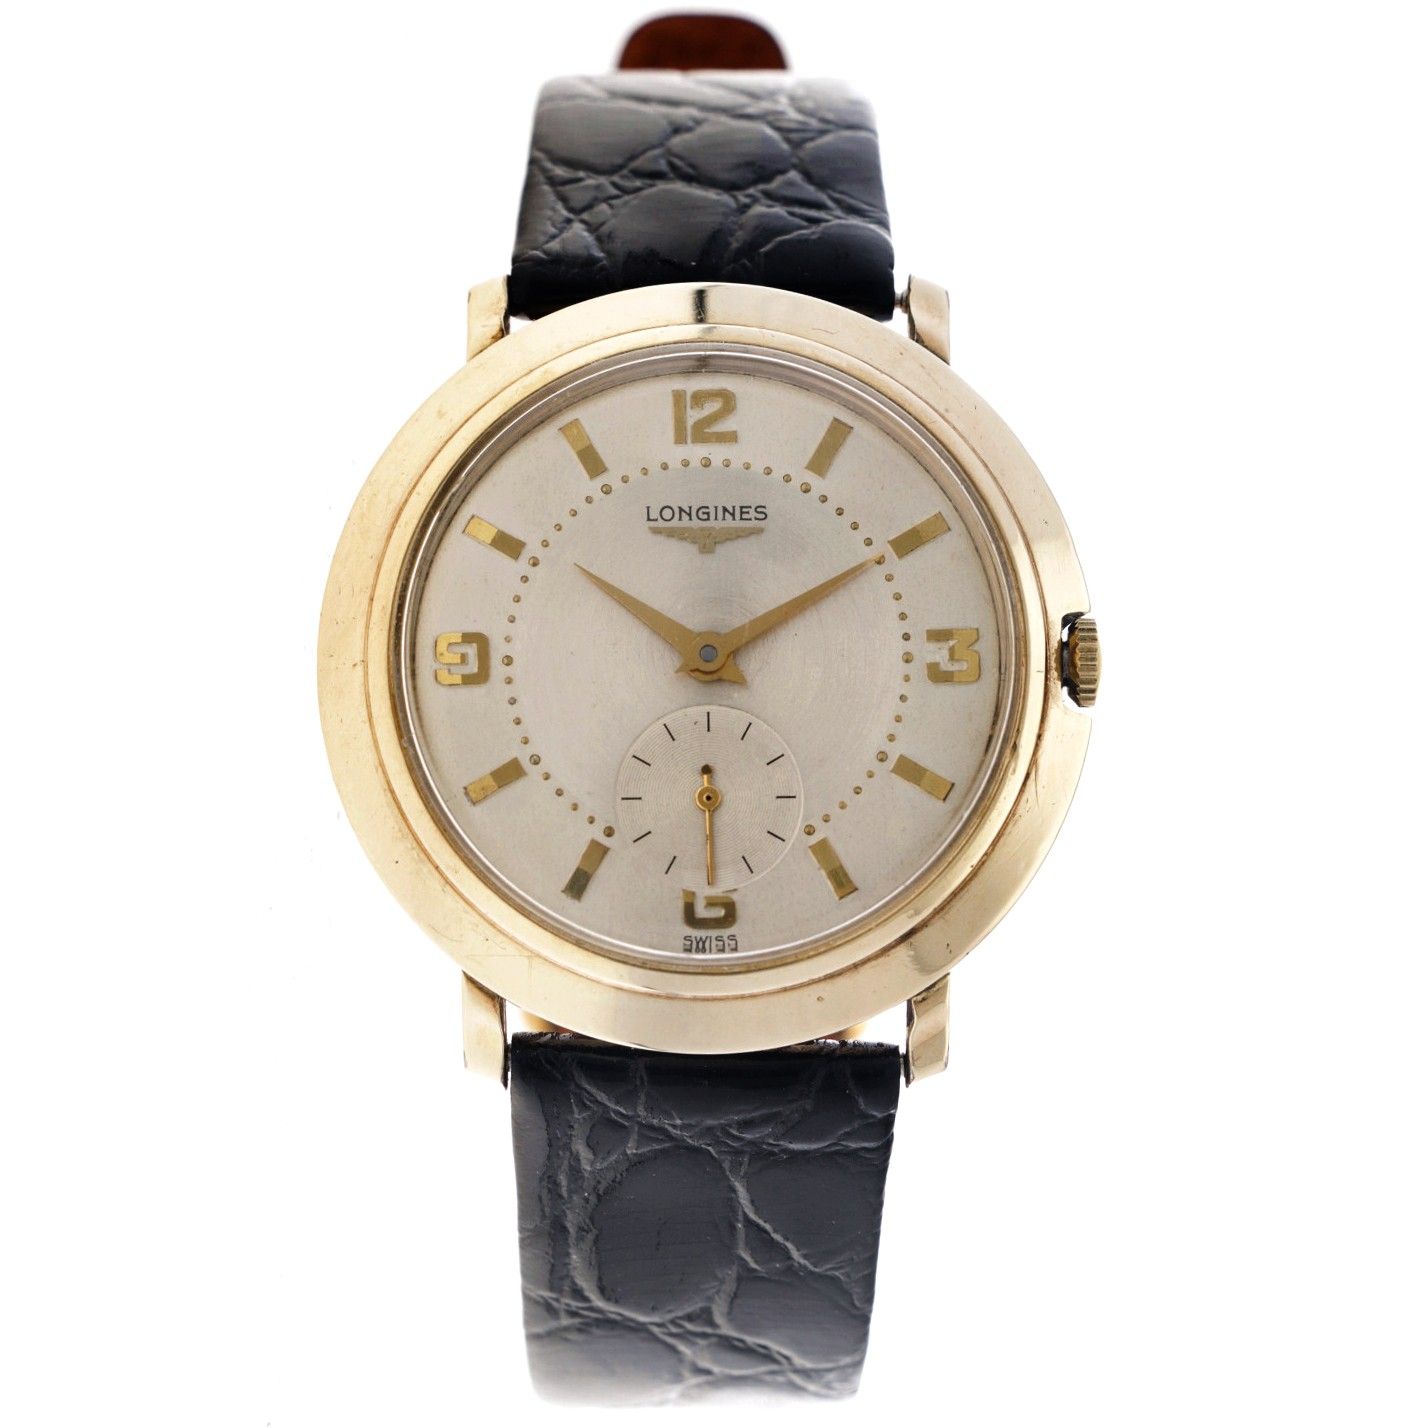 Longines Wittnauer dress watch 2423 - Men's watch - approx. 1960. Gehäuse: Gold &hellip;